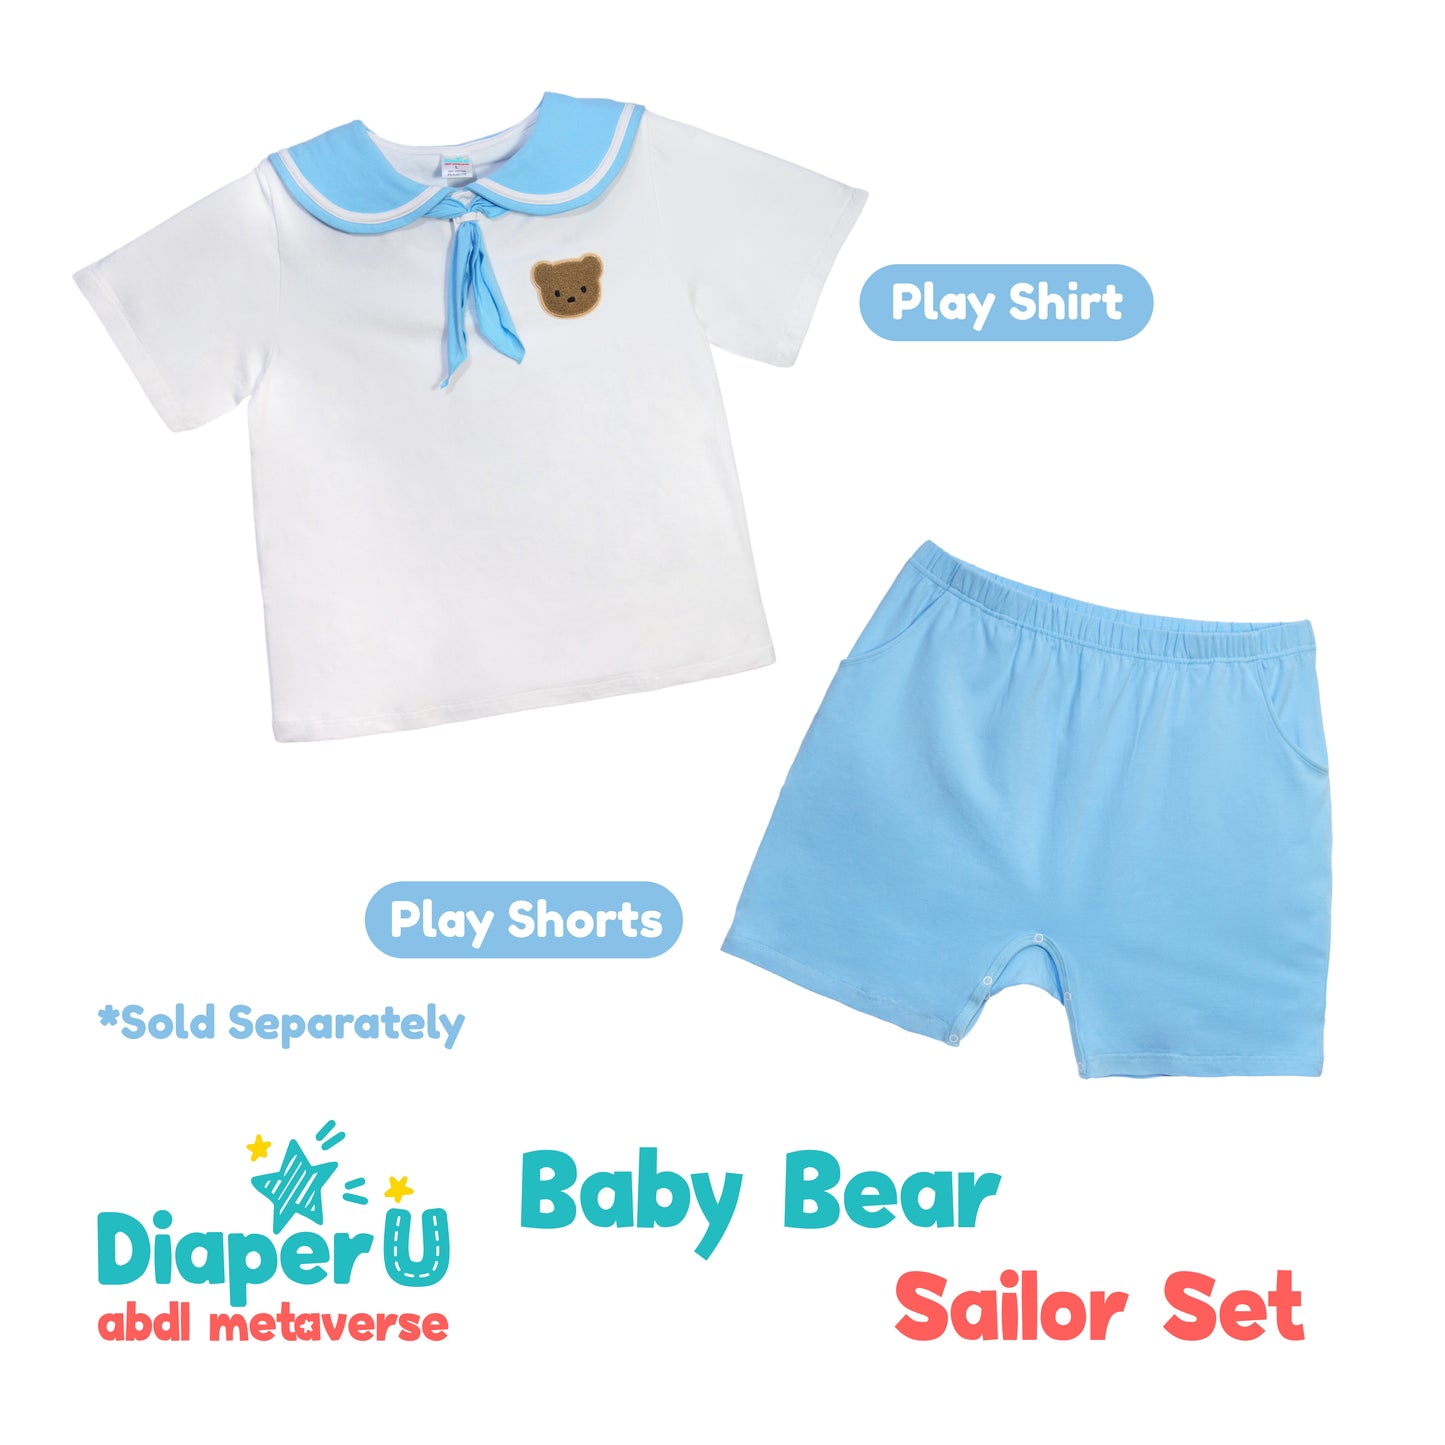 Baby Bear Snap Shorts